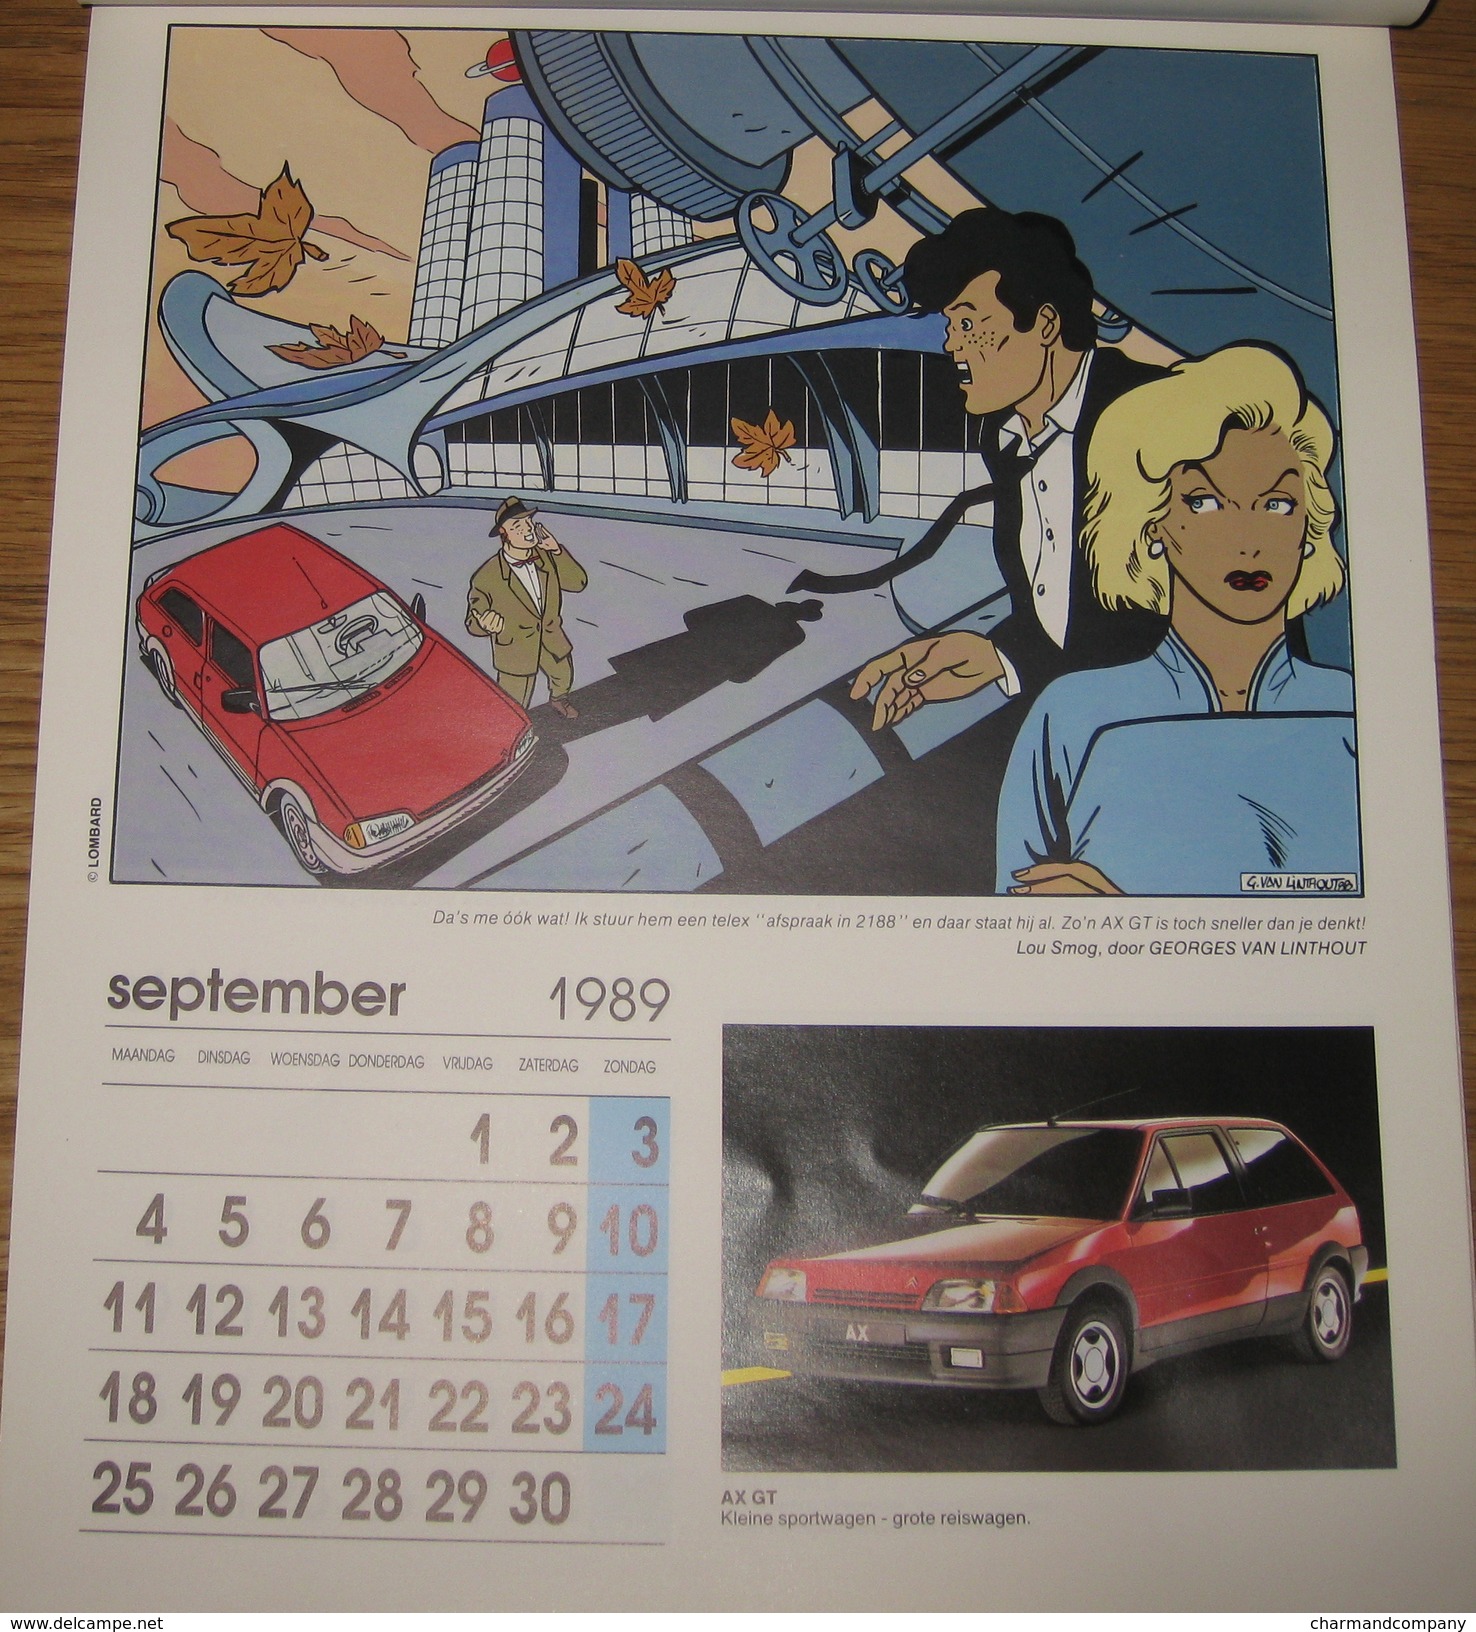 Calendrier Publicitaire Citroën 1989 12 dessinateurs Walthery, Tibet, Dany ..12 modèles de voitures 2CV, AX, C15, CX ..